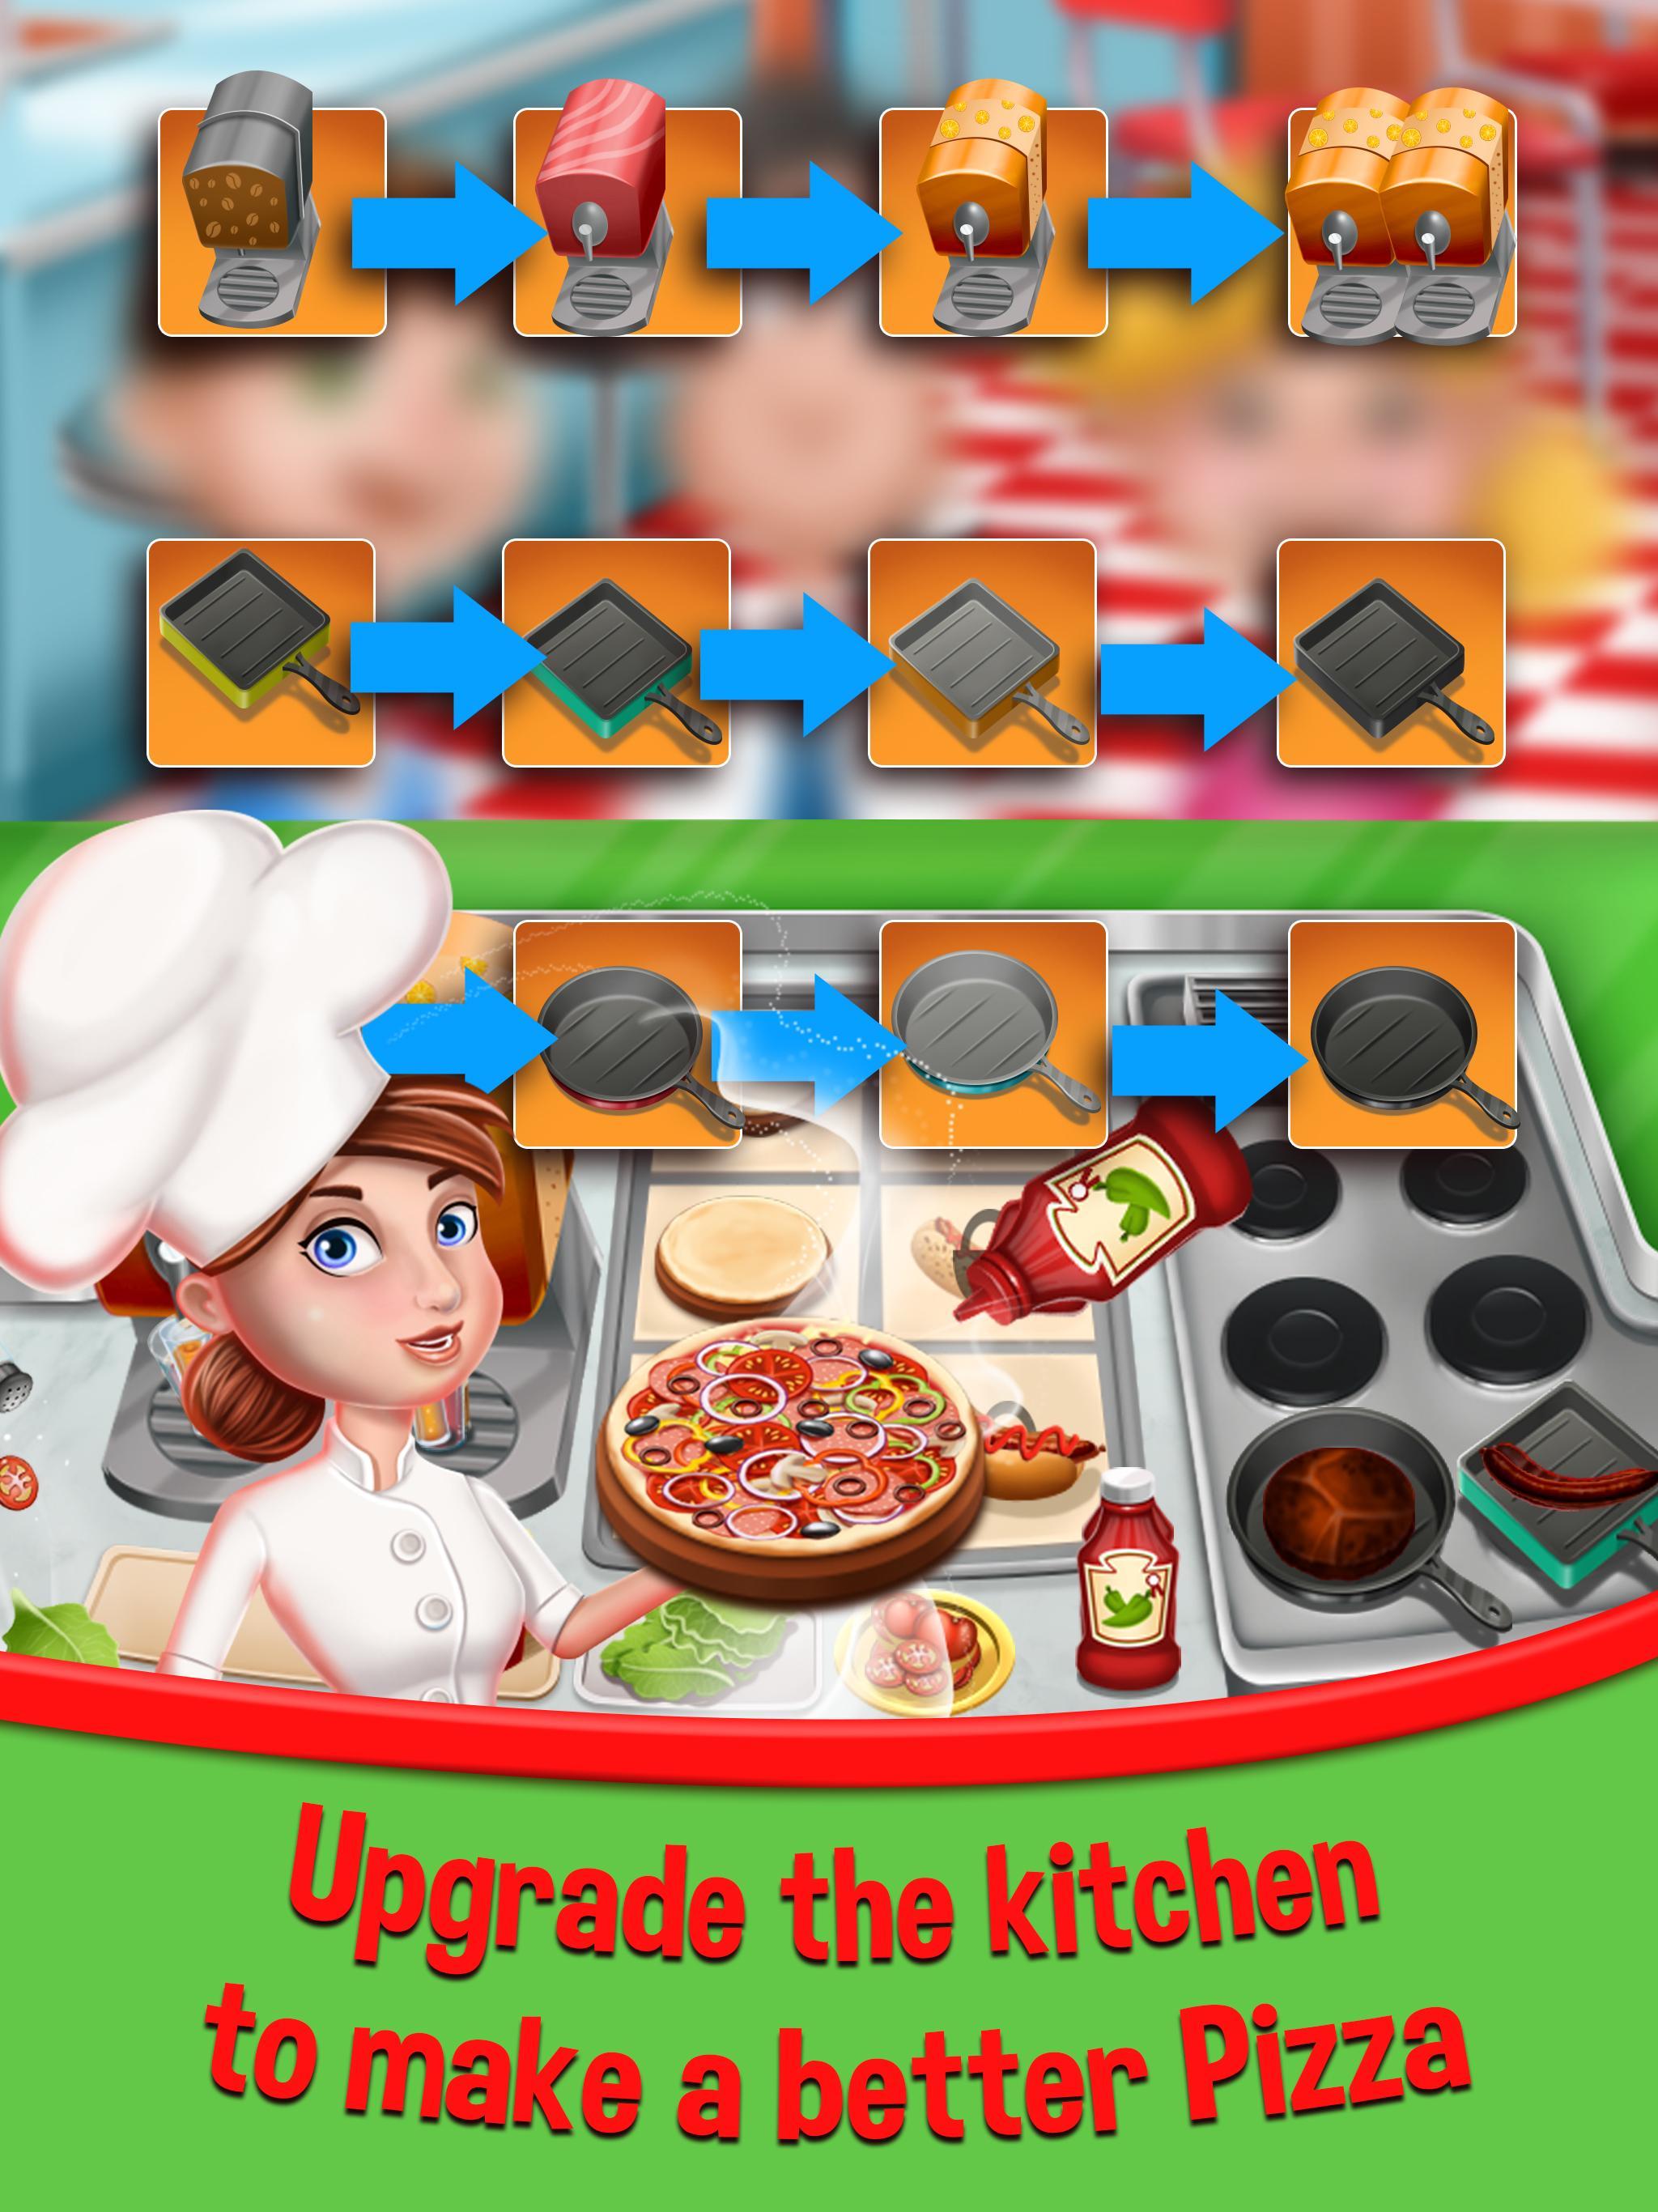 игра готовить пиццу скачать на андроид фото 77